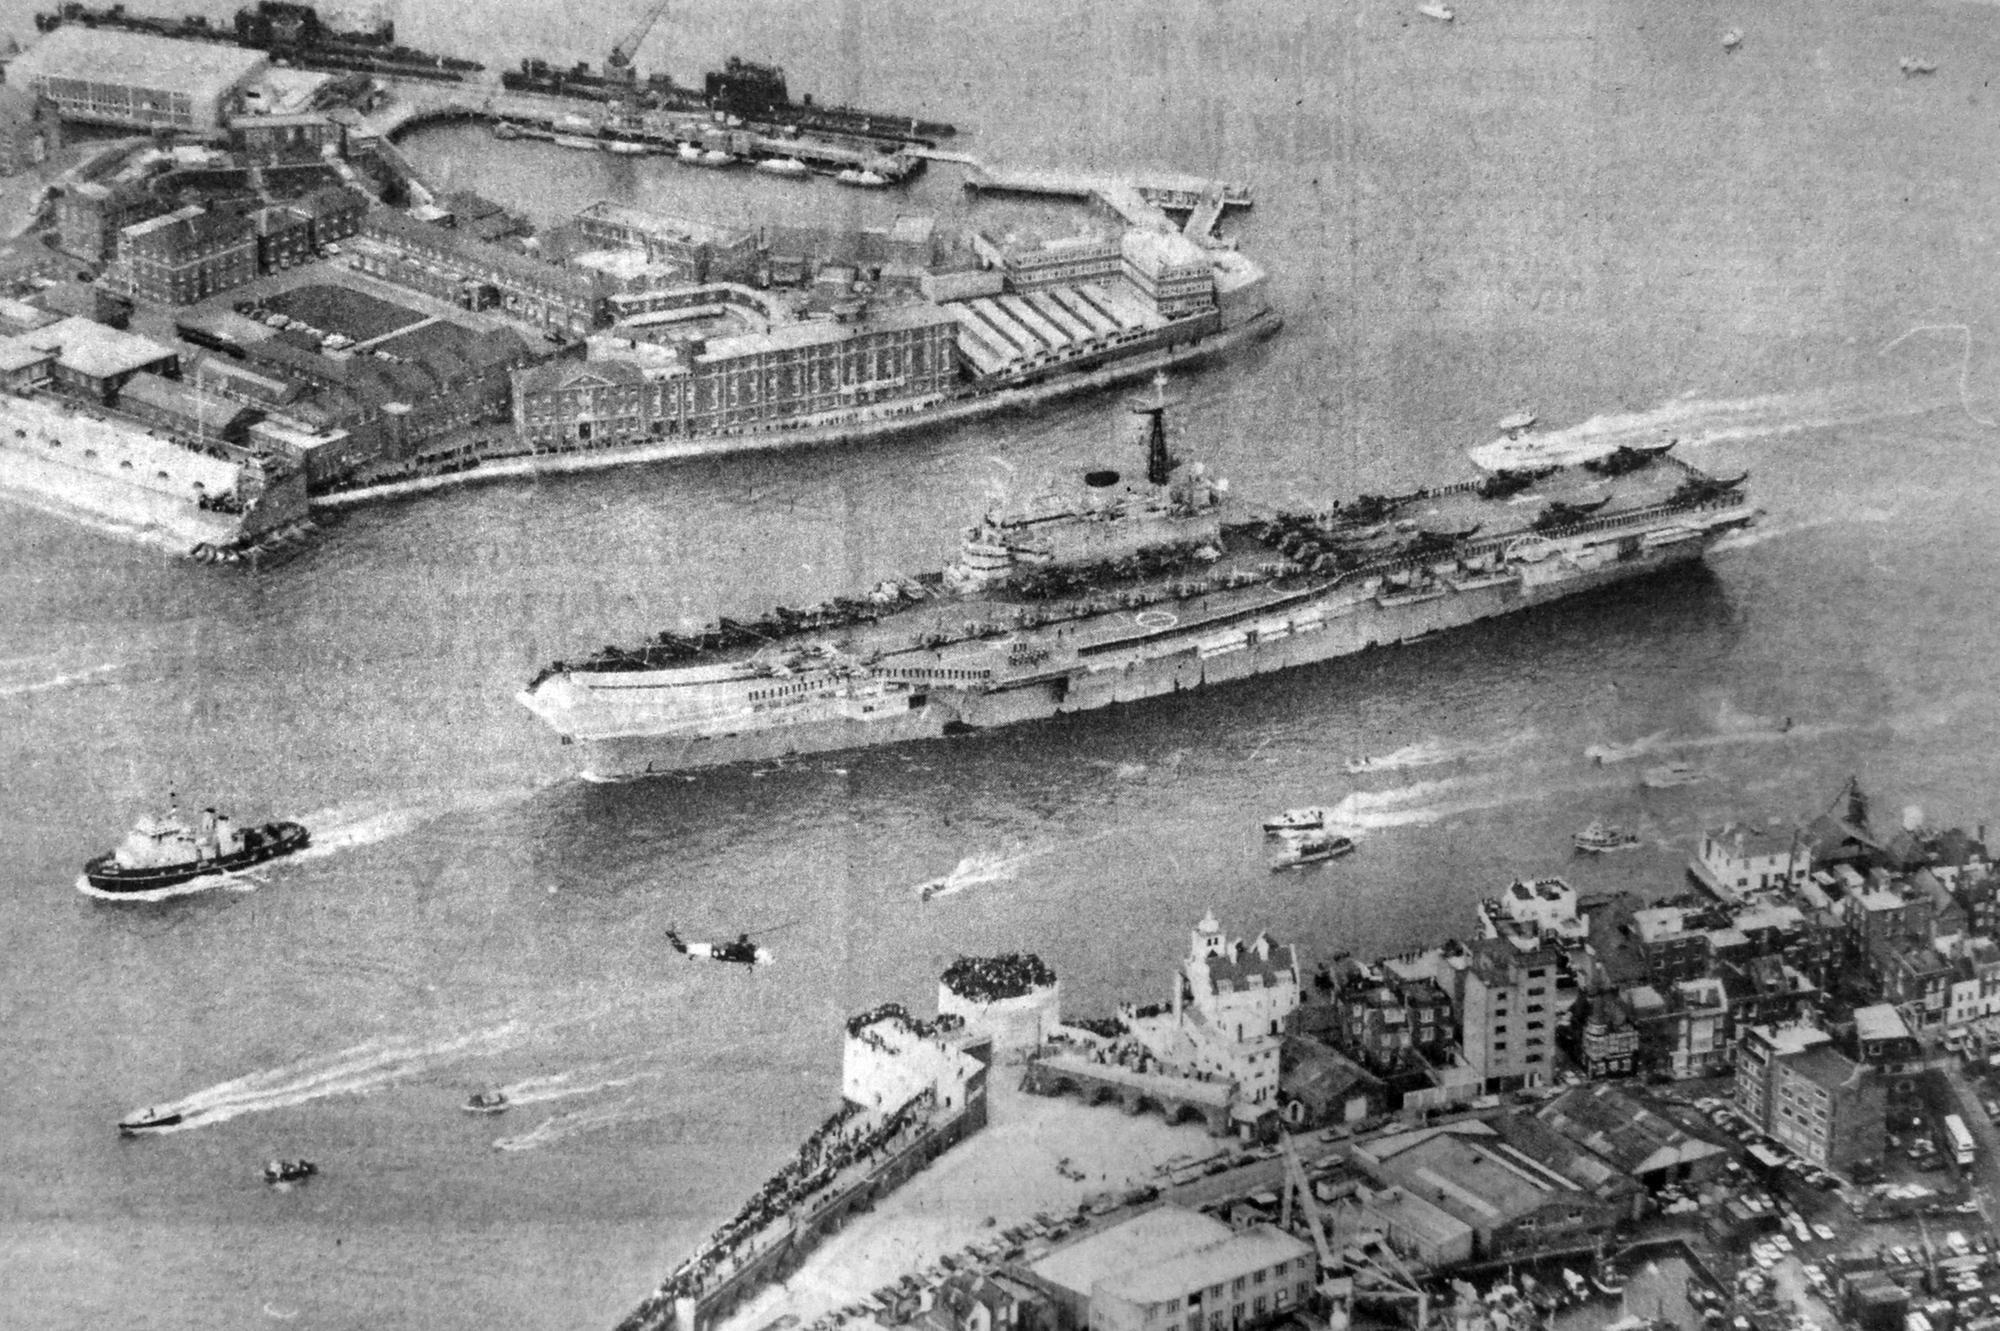 Portsmouth Dockyard Veteran Recalls Incredible Effort To Get Warships